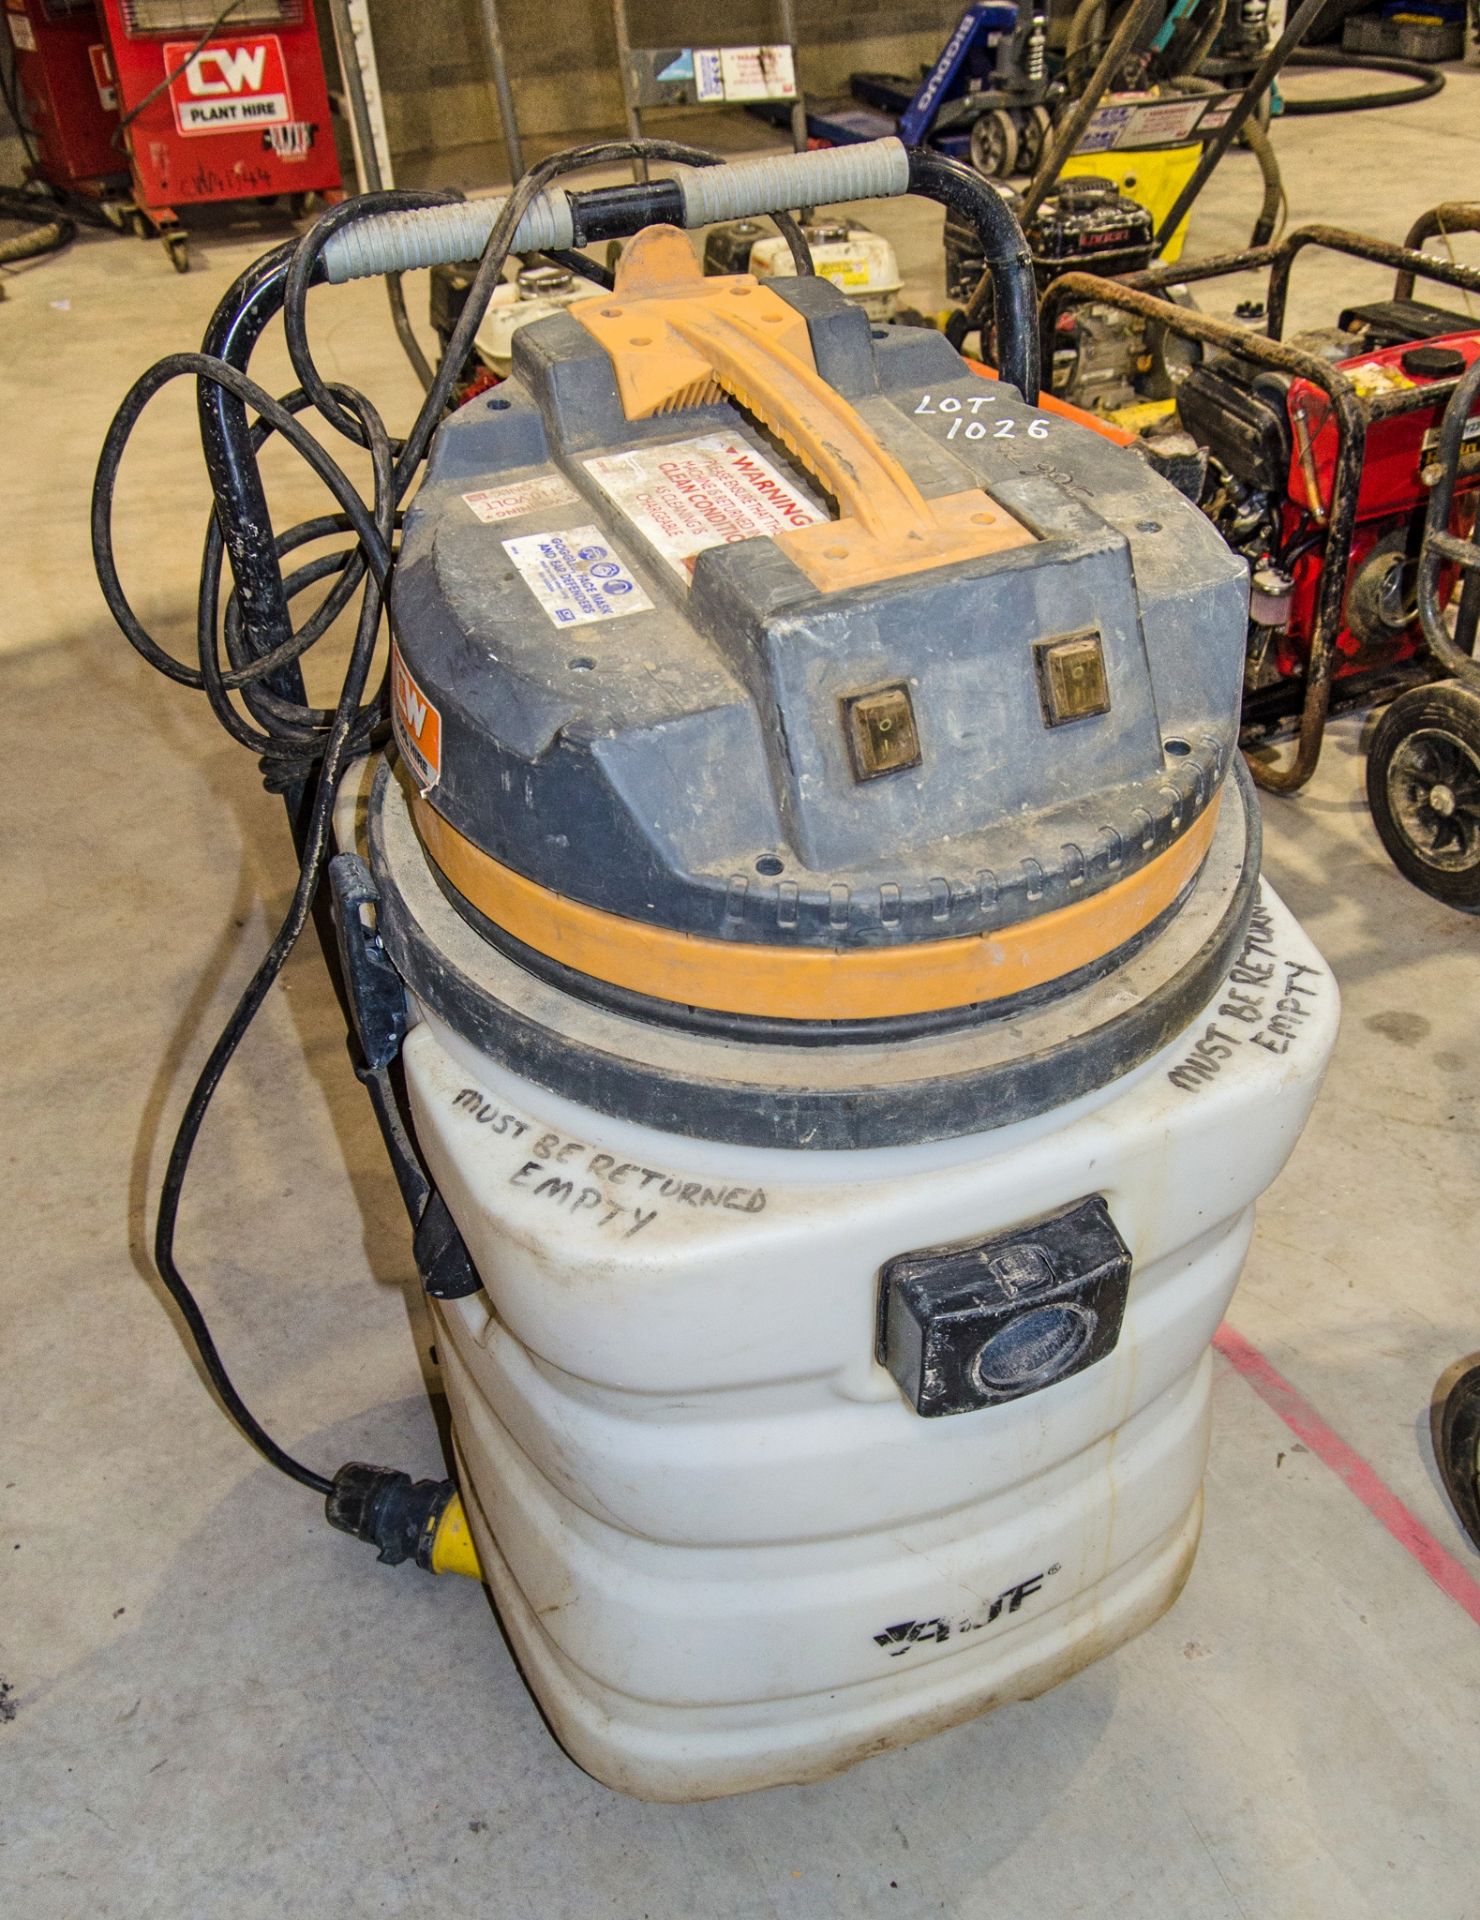 V-Tuf 110v vacuum cleaner 58674